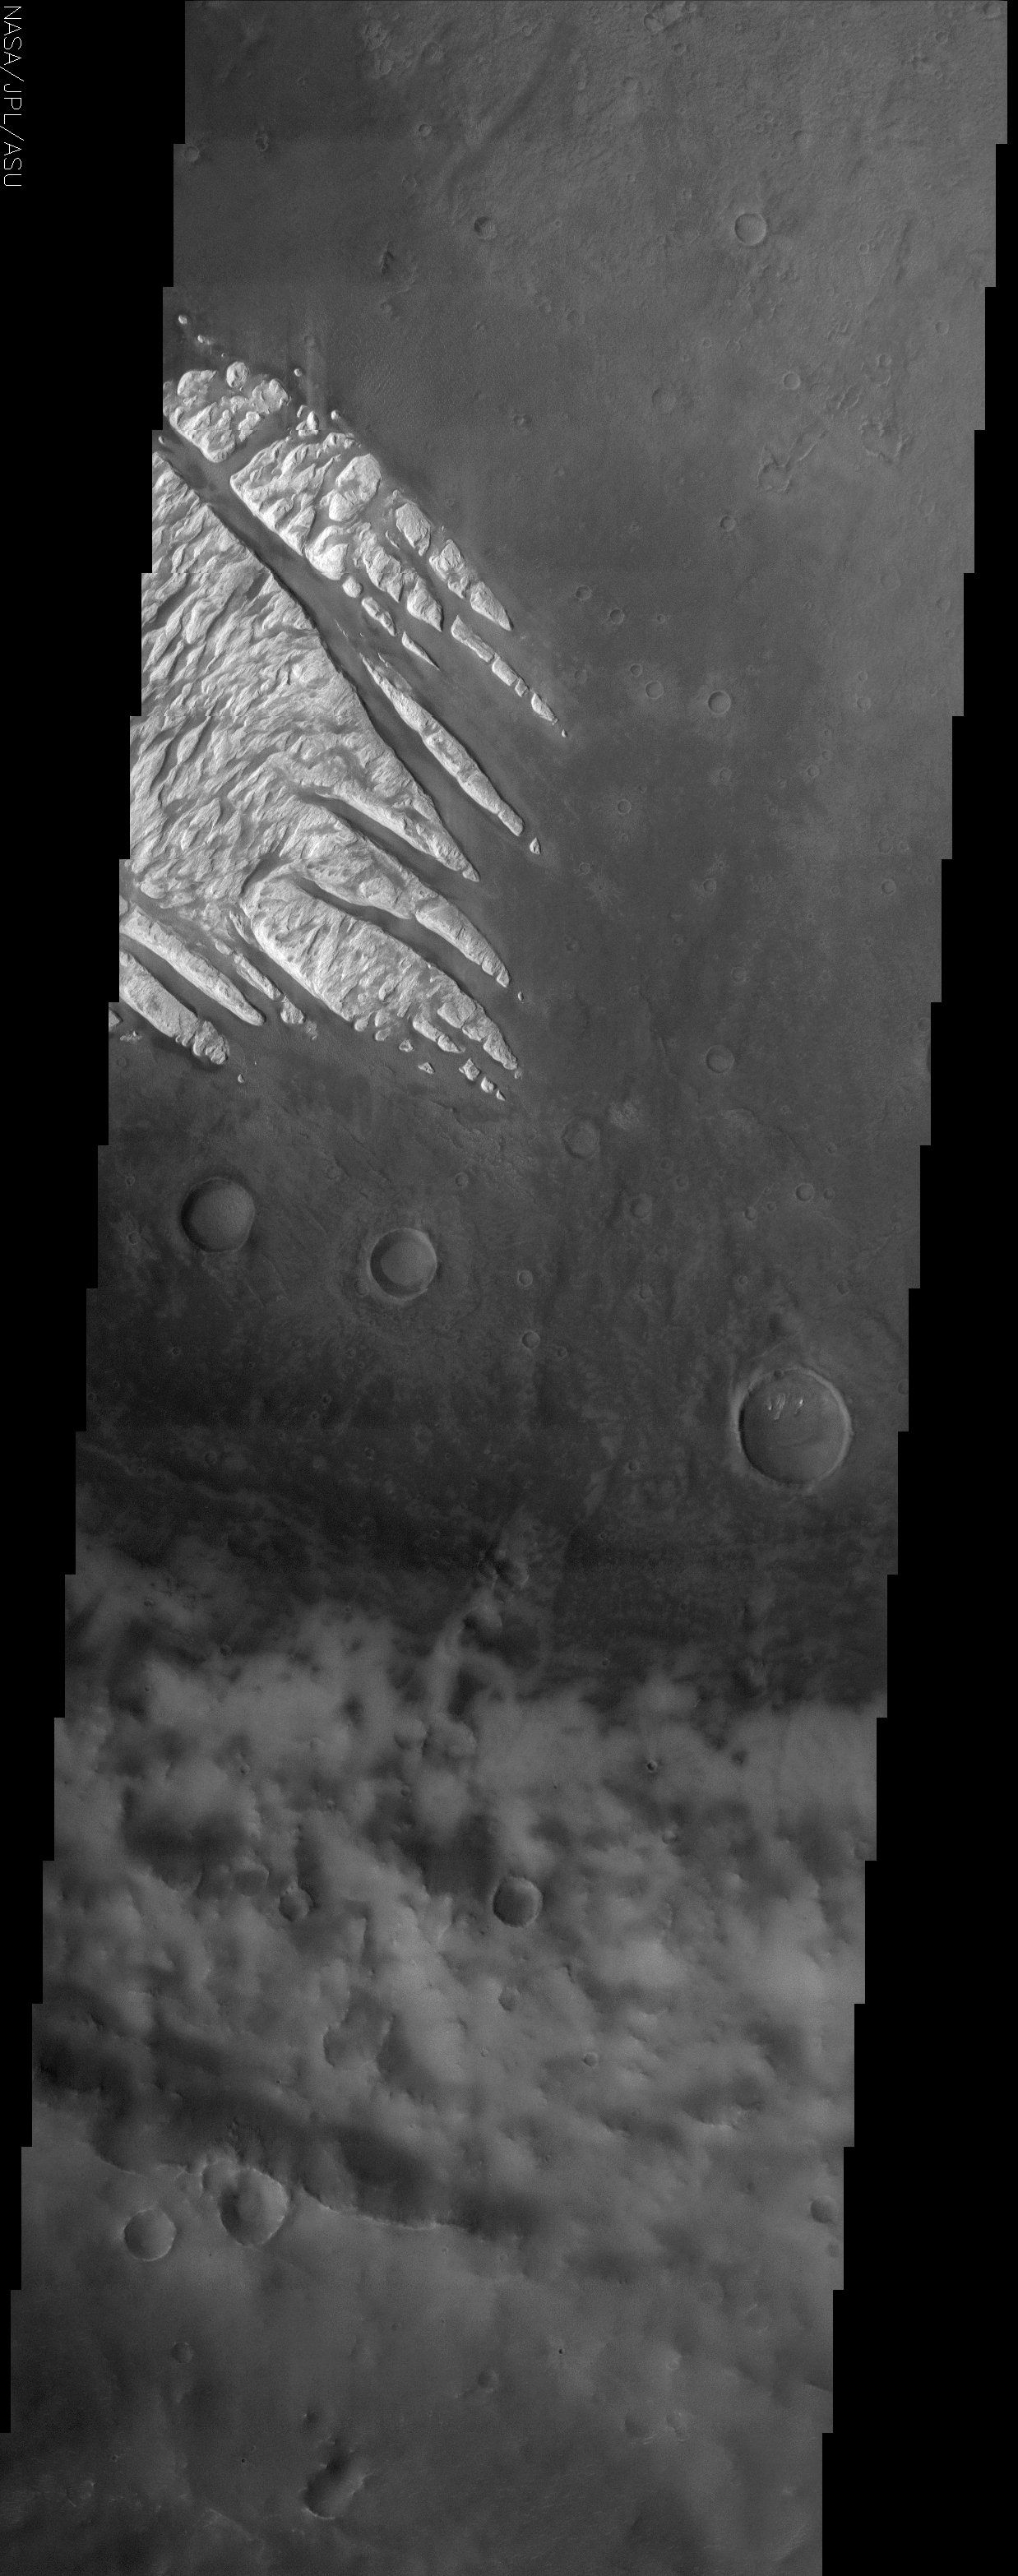  White Rock Fingers on Mars 